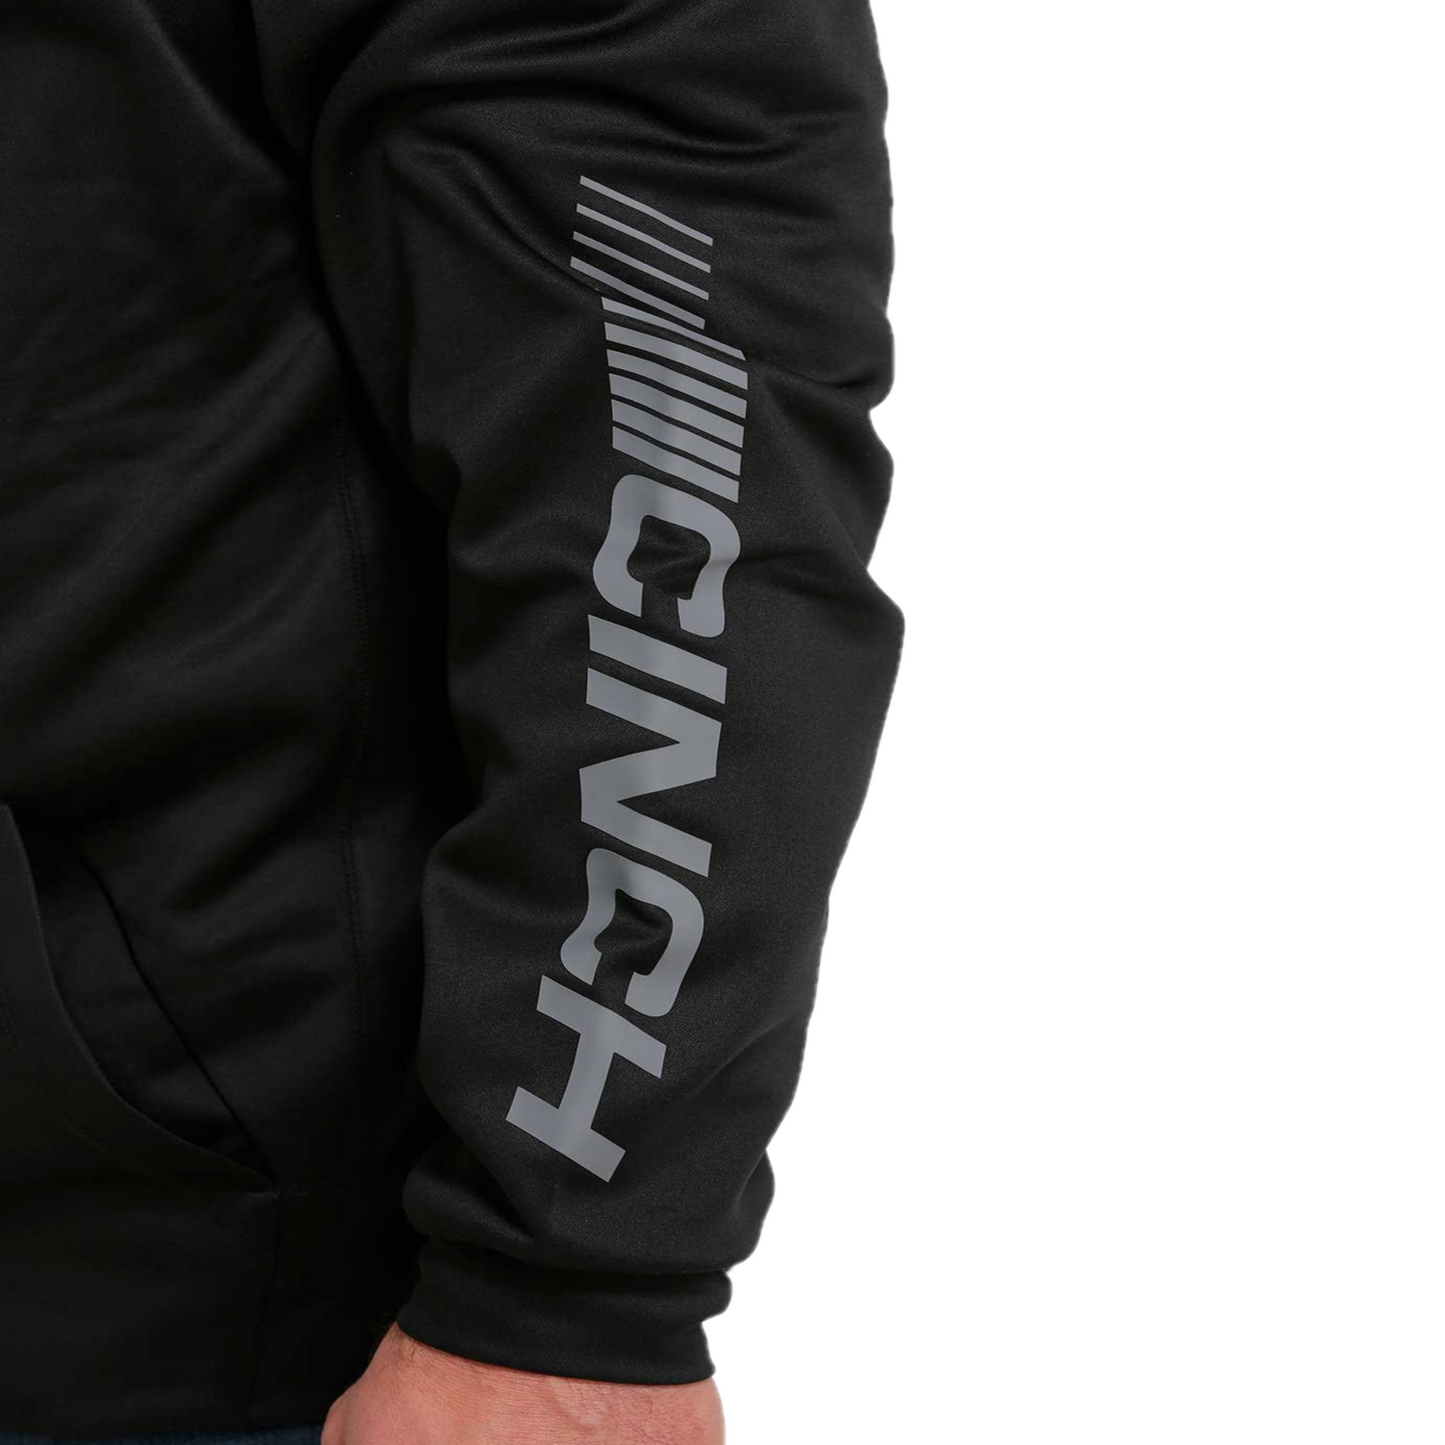 Cinch® Men's Black Pullover Half Zip Hoodie MWK1240003